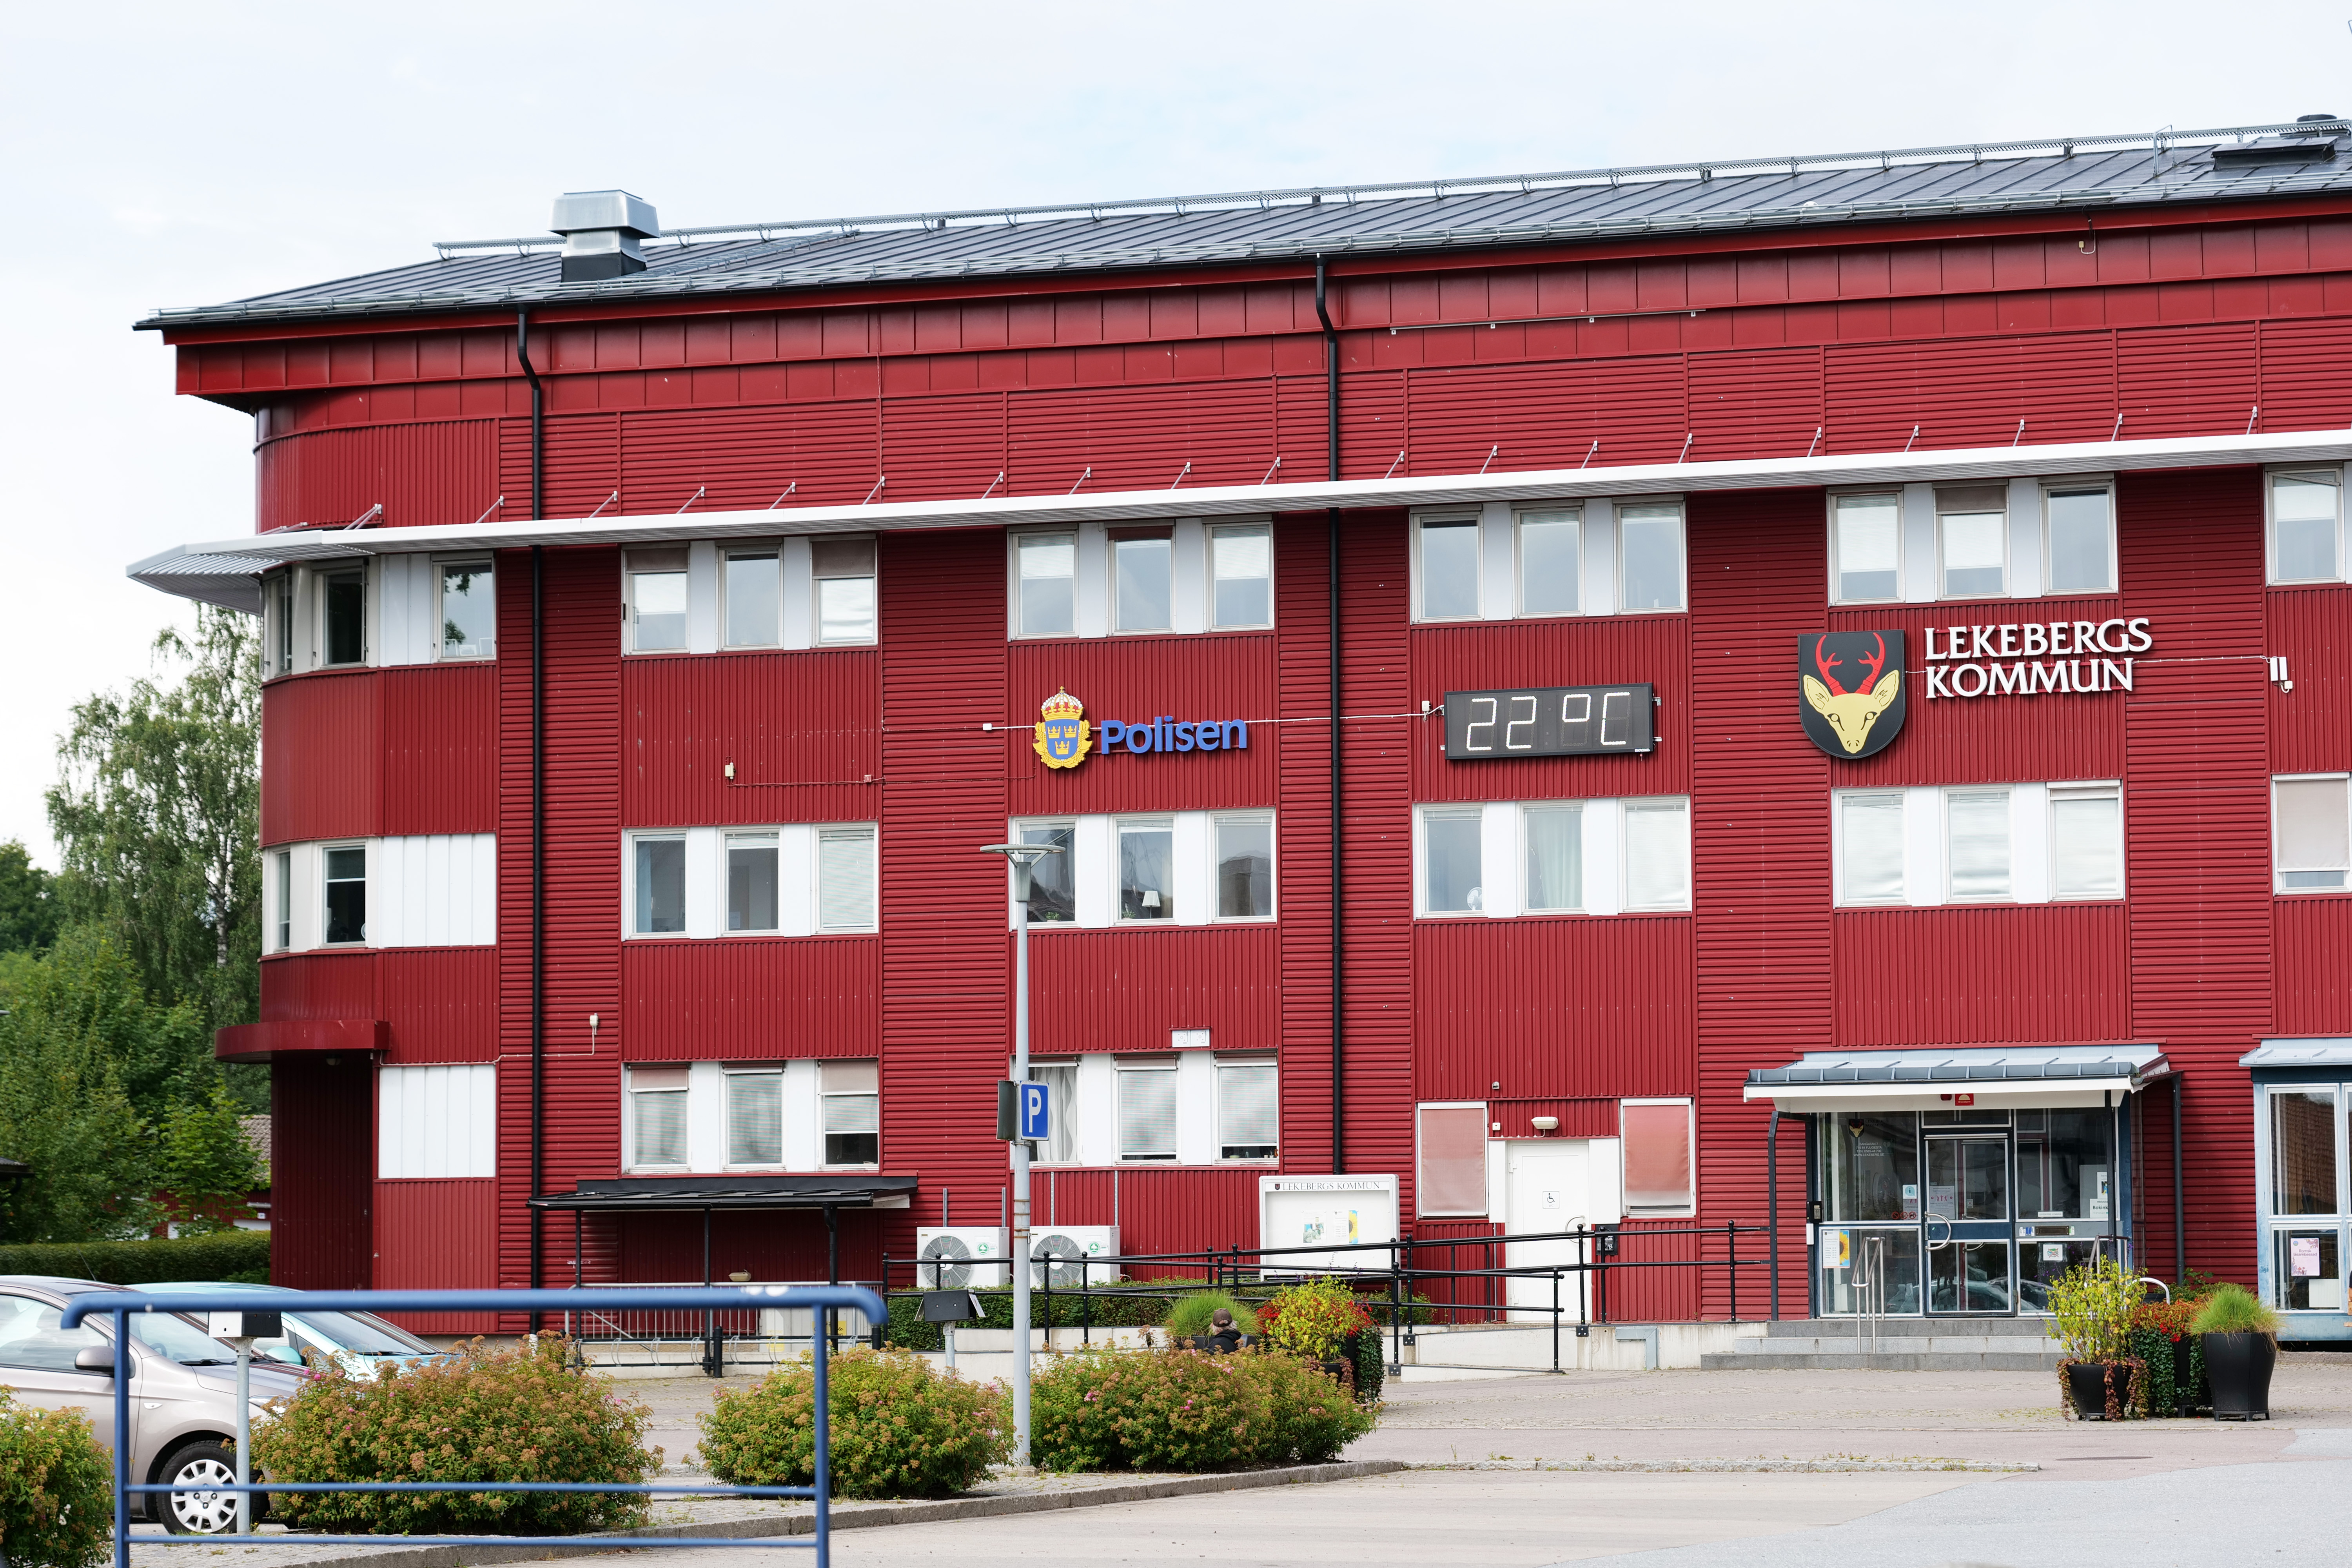 Lekebergs kommunhus fasaden